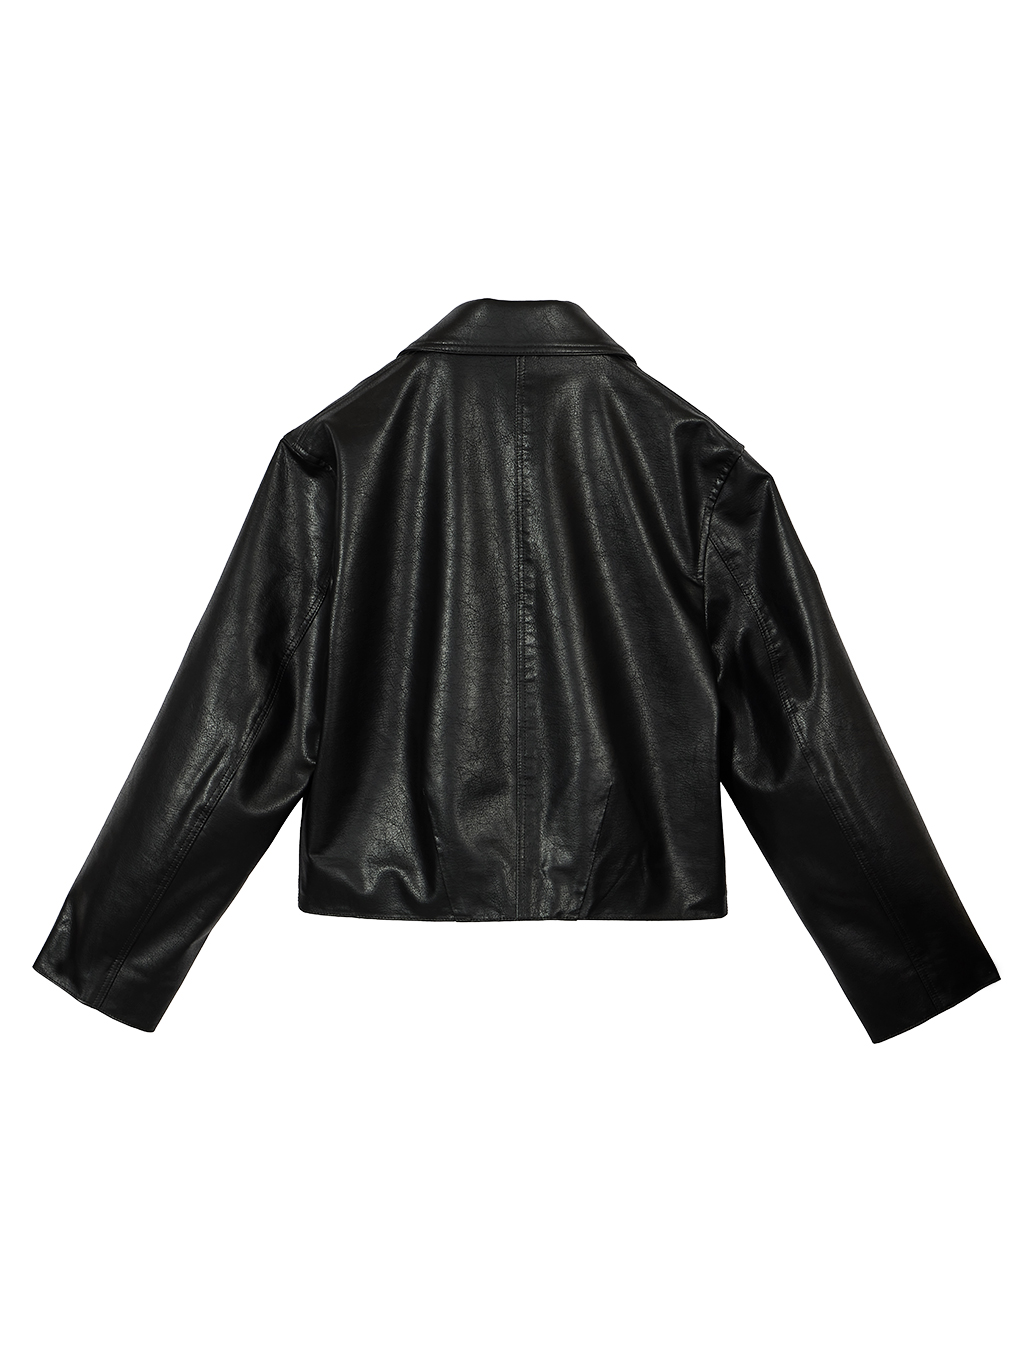 AMERI 2way fake leather short jacket